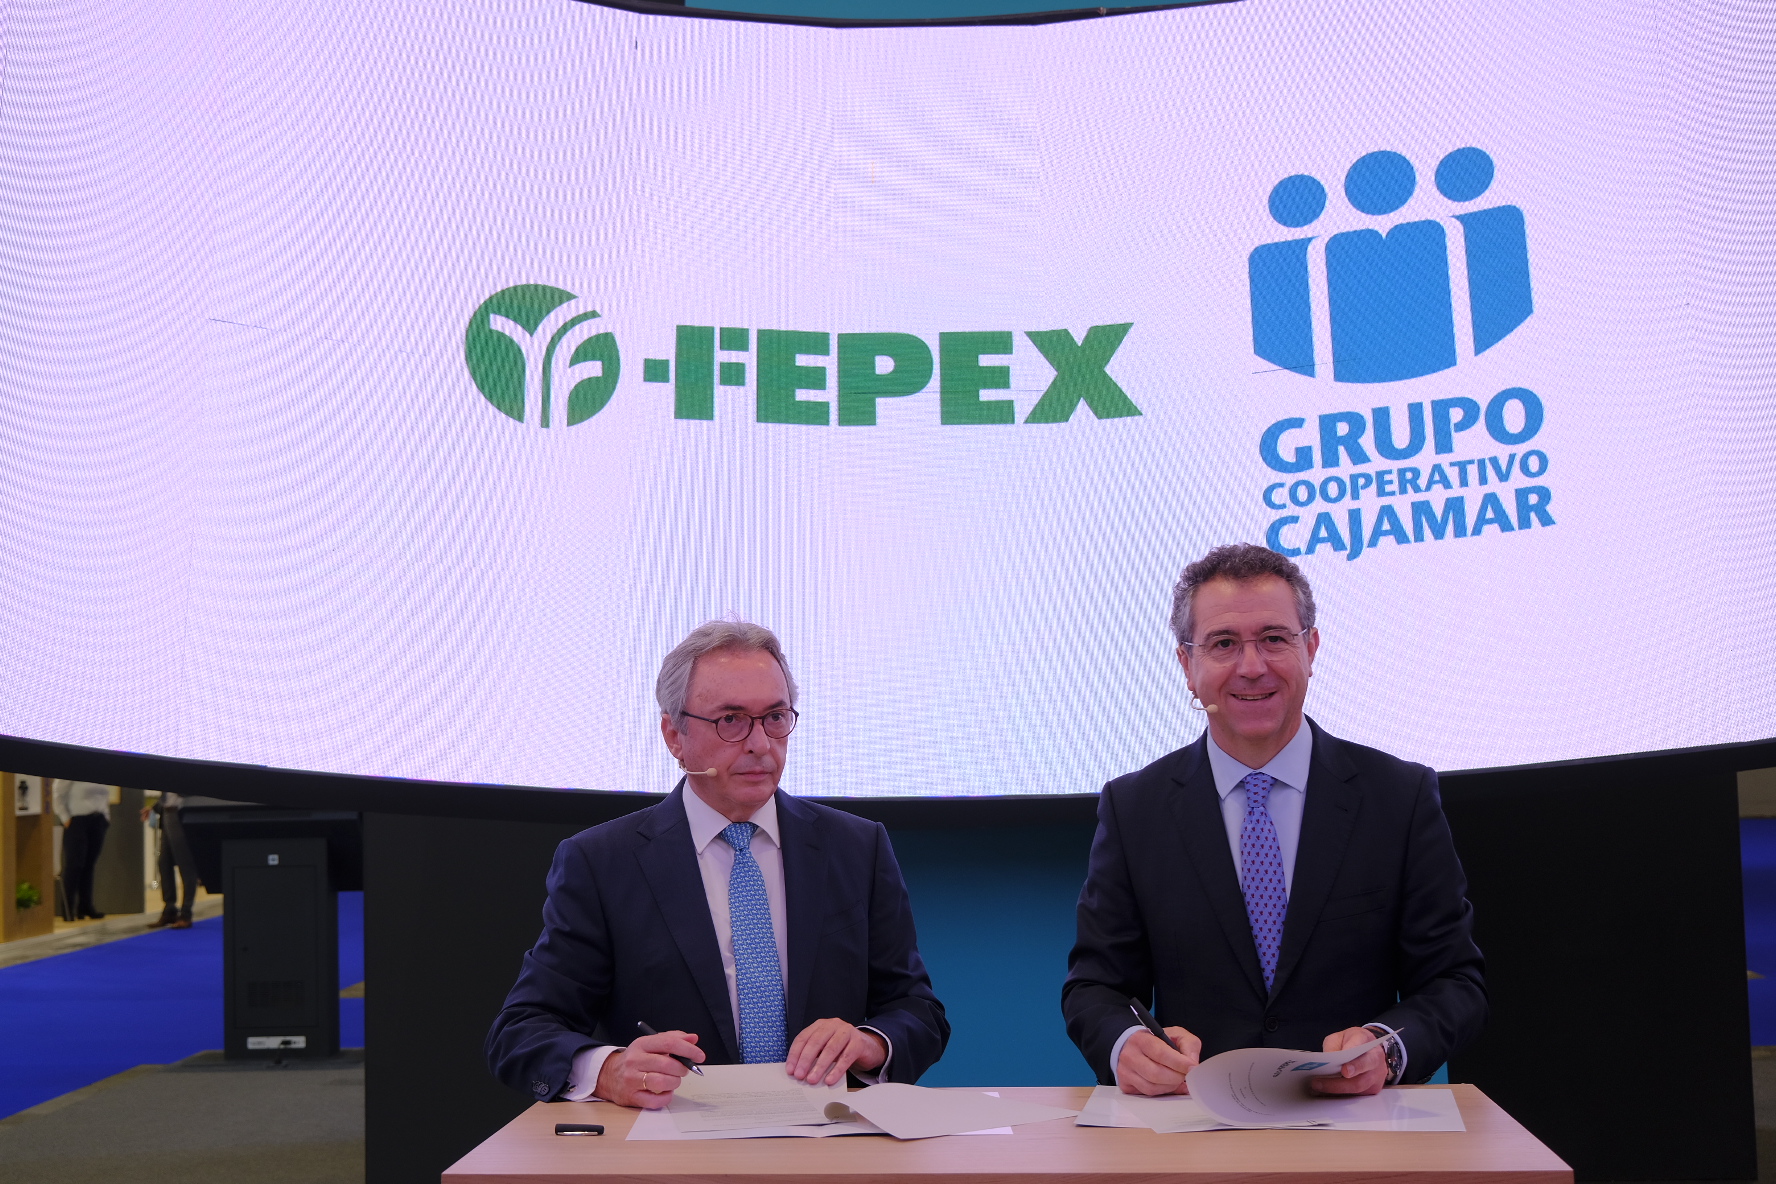 Cajamar y FEPEX renuevan su compromiso para potenciar las exportaciones hortofrutícolas españolas